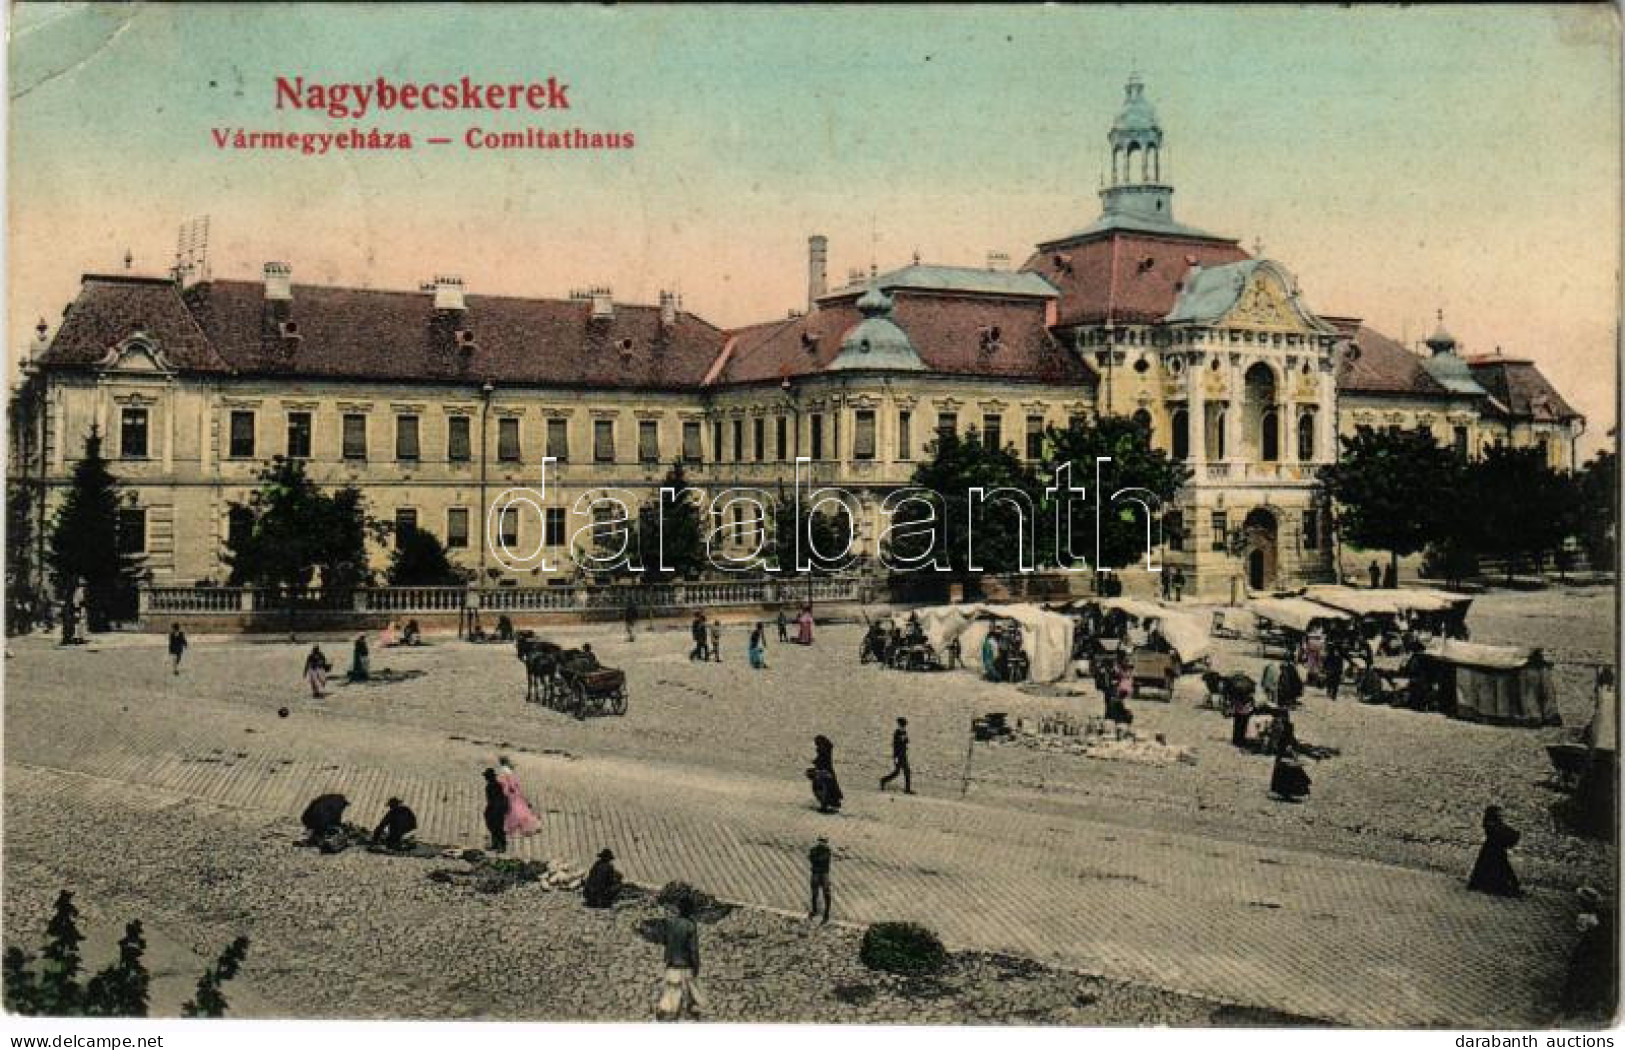 T2/T3 1906 Nagybecskerek, Zrenjanin, Veliki Beckerek; Vármegyeház, Piac / County Hall, Market (EK) - Zonder Classificatie